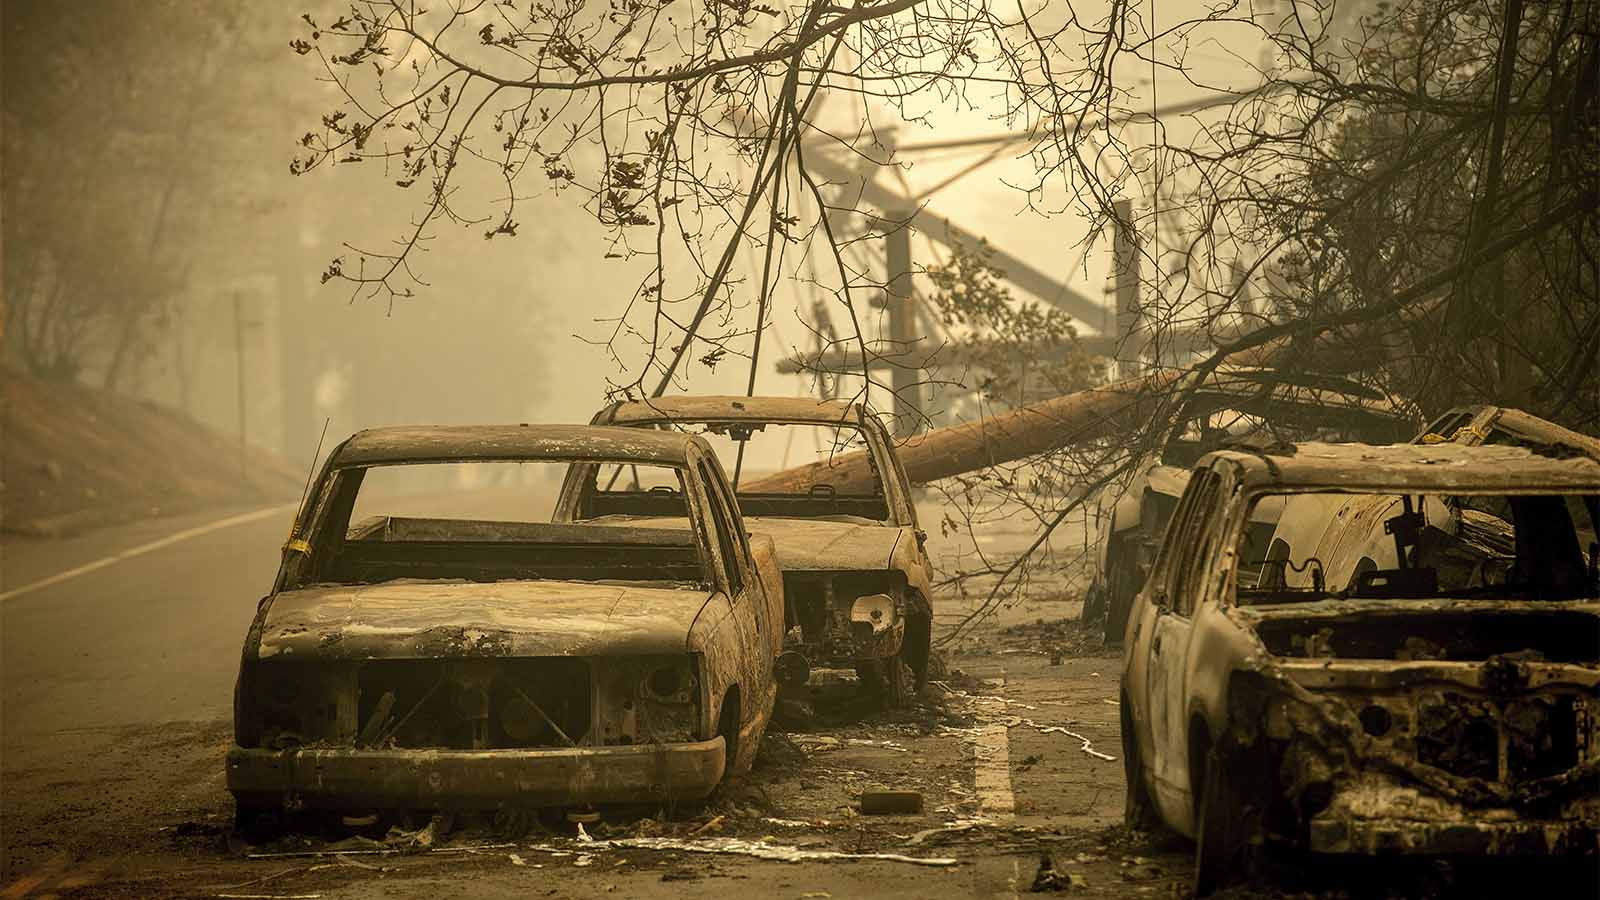 מכוניות שננטשו ועלו באש בפרדייז קליפורניה, שנפגעה קשות משרפות הענק במדינה. 10 בנובמבר 2018. (צילום: (AP Photo/Noah Berger